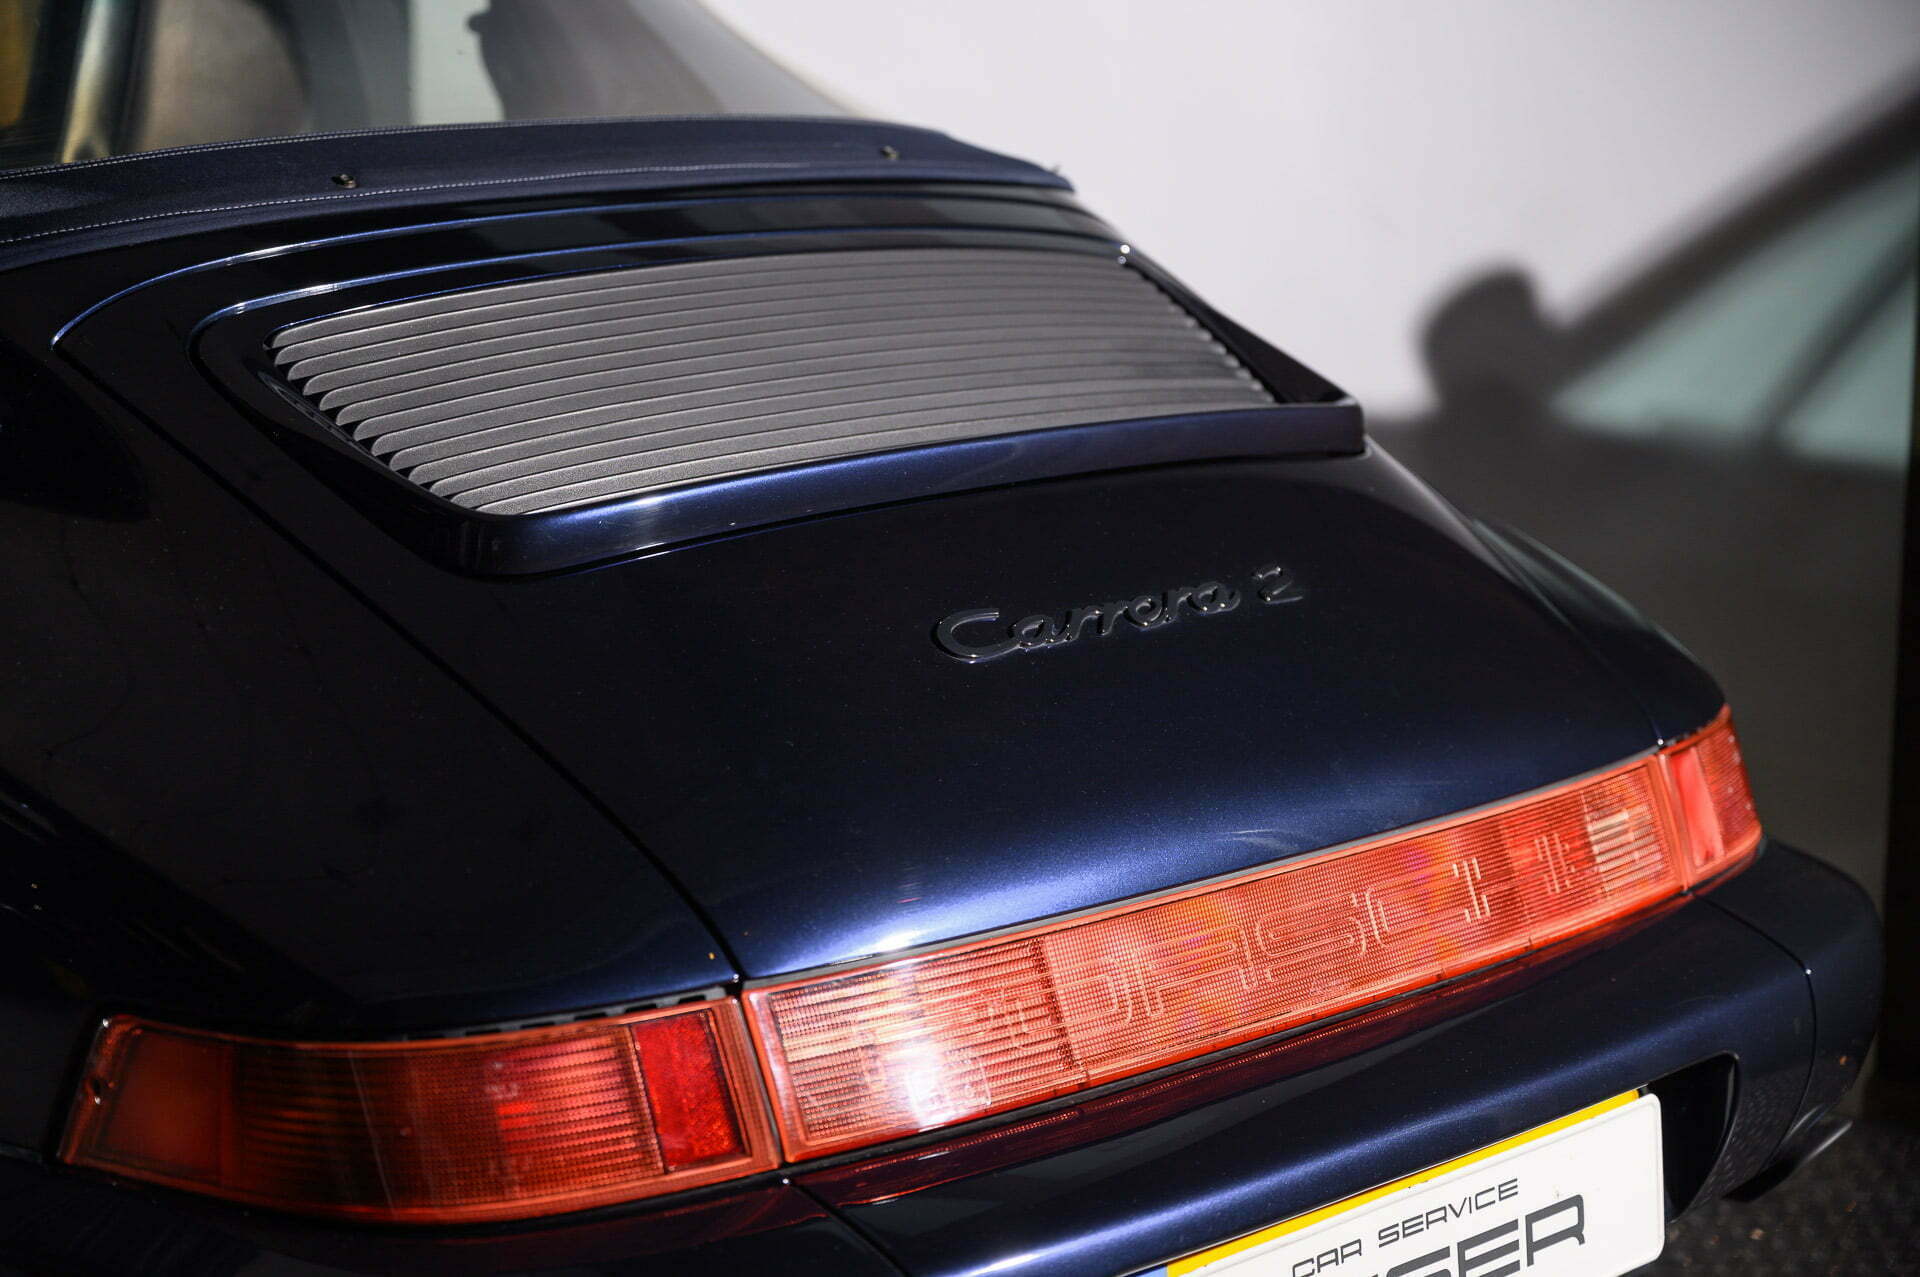 PORSCHE 964 Carrera 2 Cabriolet Nachtblau-met Car Service Visser Gespecialiseerd in Porsche